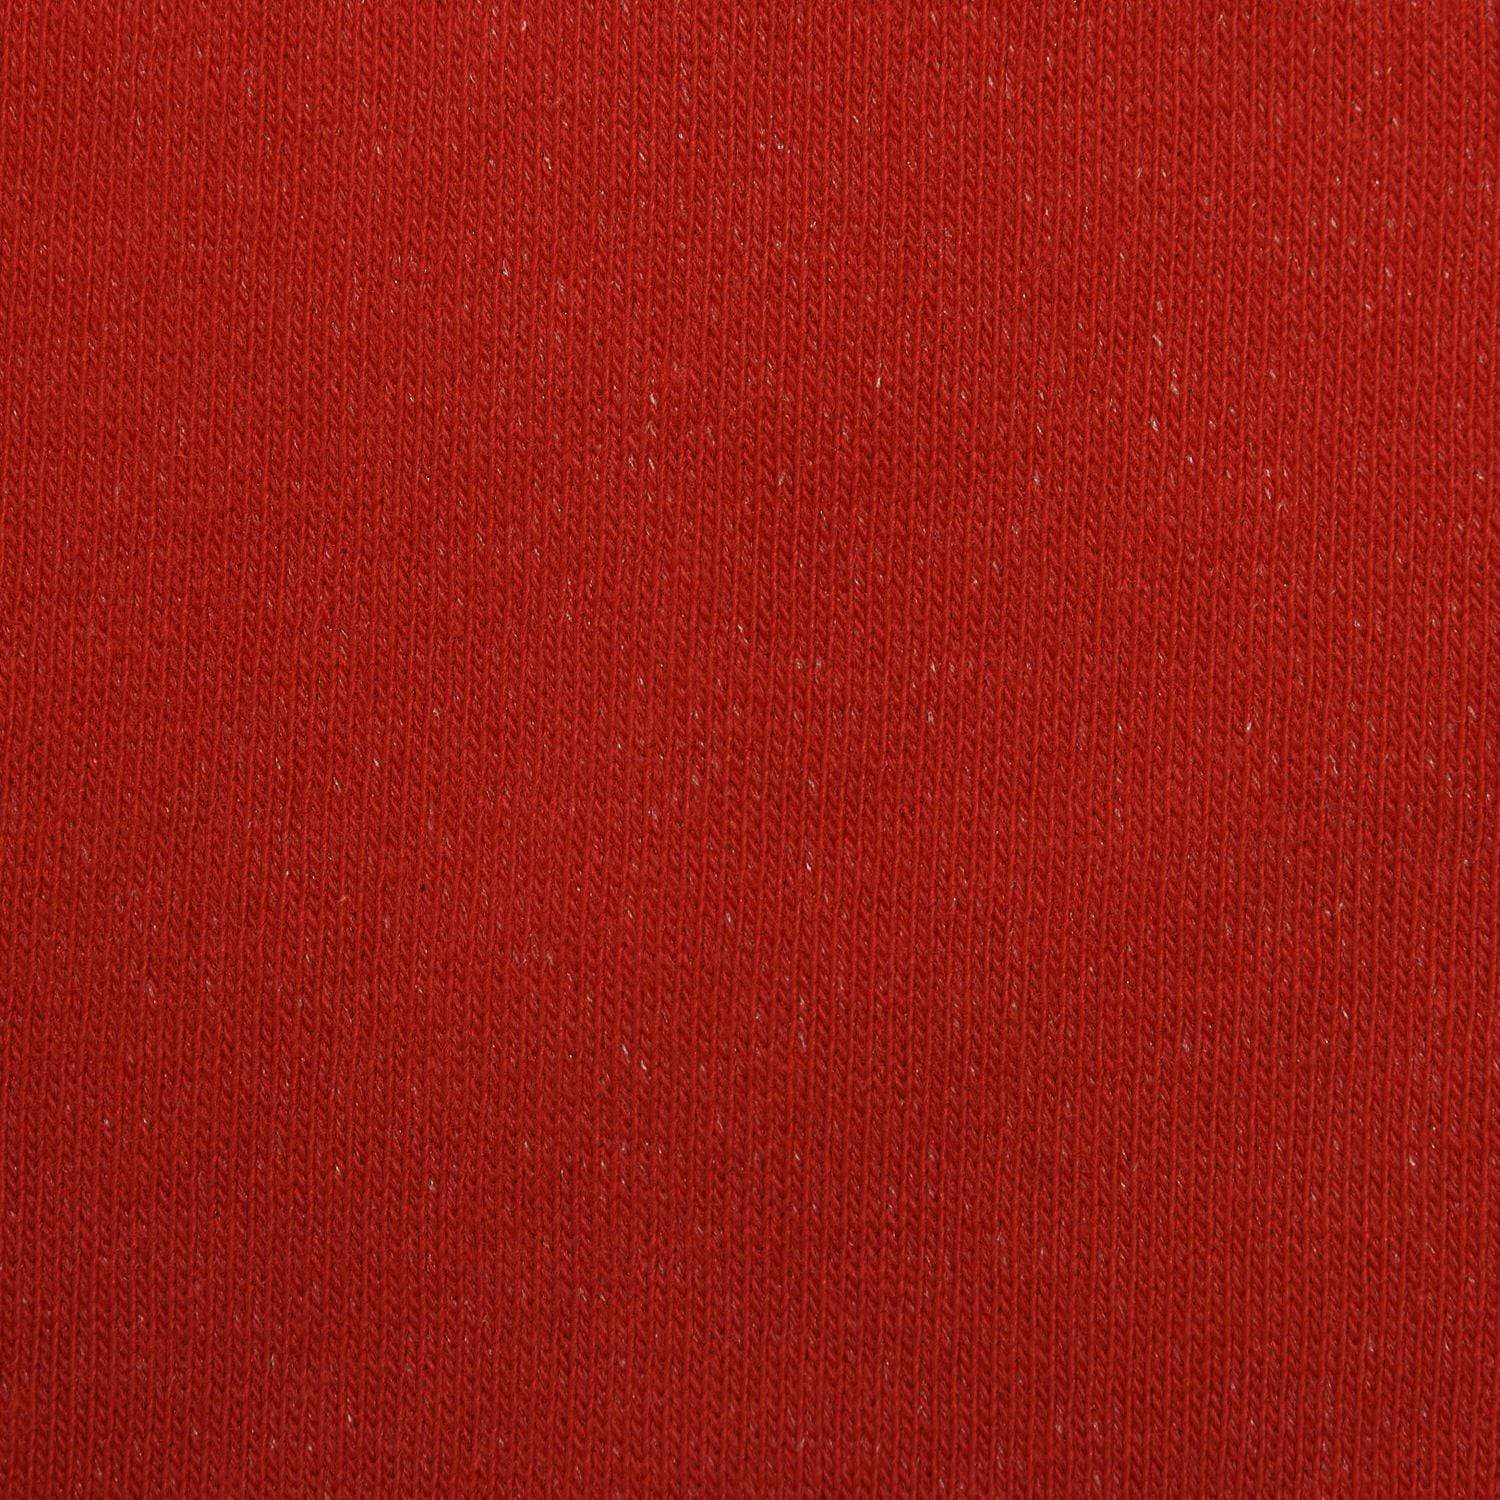 T.M.Lewin-Plain-Fine-Gauge-Socks-Red-63515-008